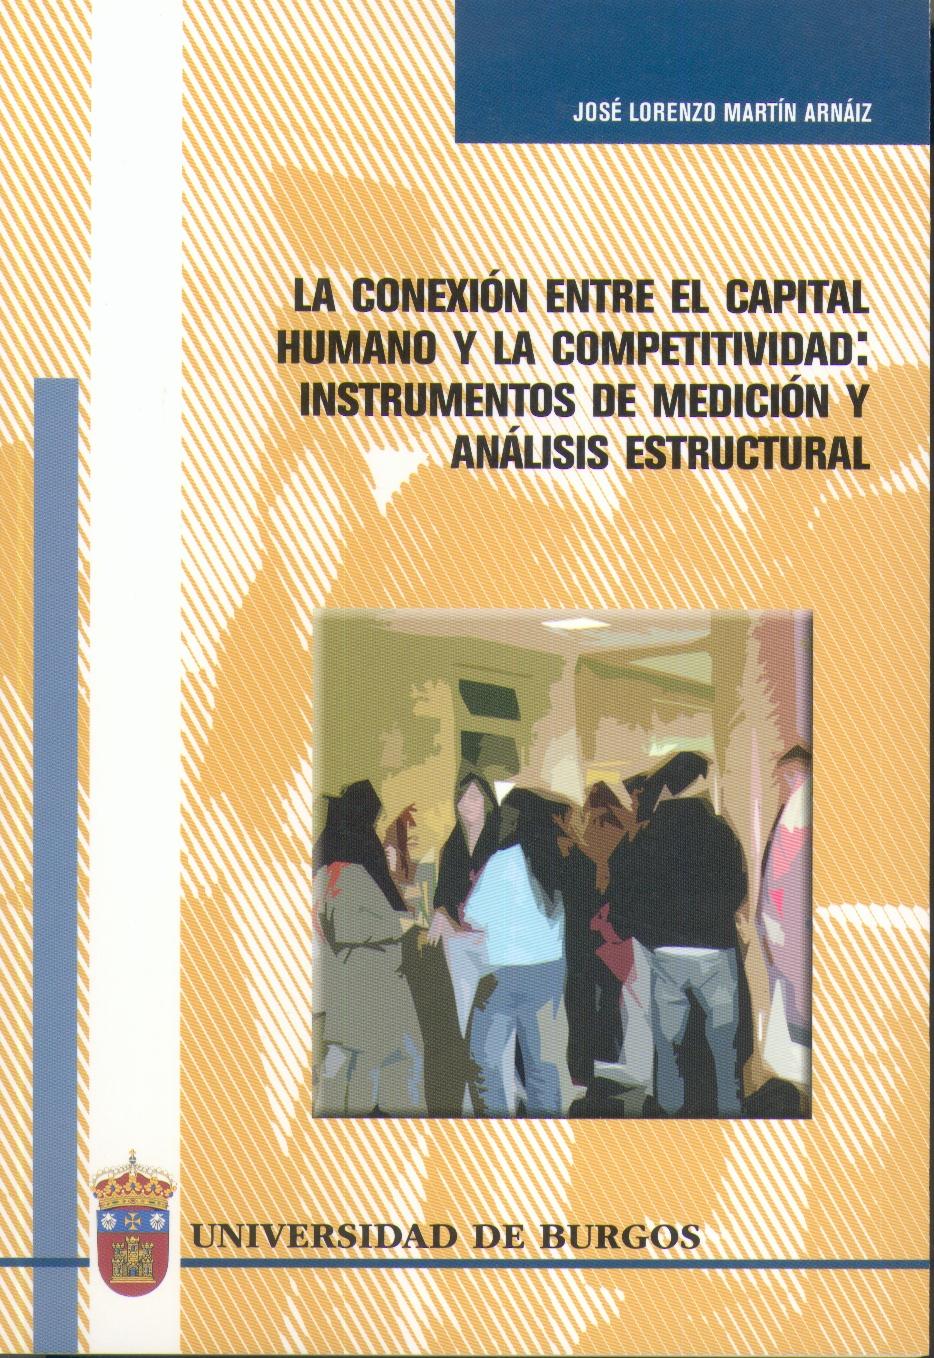 La Conexion Entre el Capital Humano y la Competitividad "Instrumentos de Medicion y Analisis Estructural"